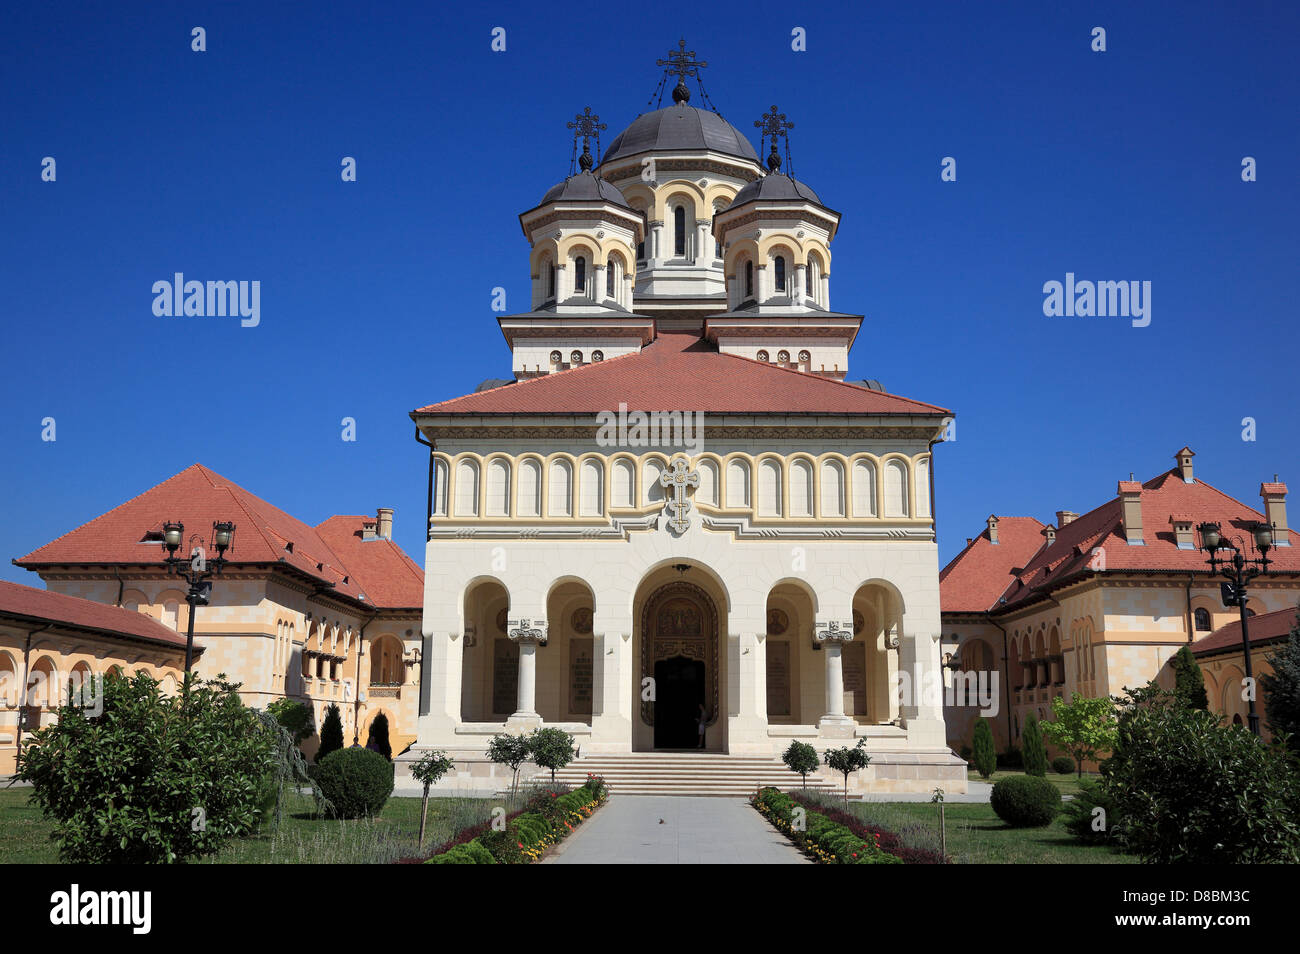 Incoronazione cattedrale della Chiesa Ortodossa Romena, Alba Iulia, Balgrad, Transilvania, Romania. Foto Stock